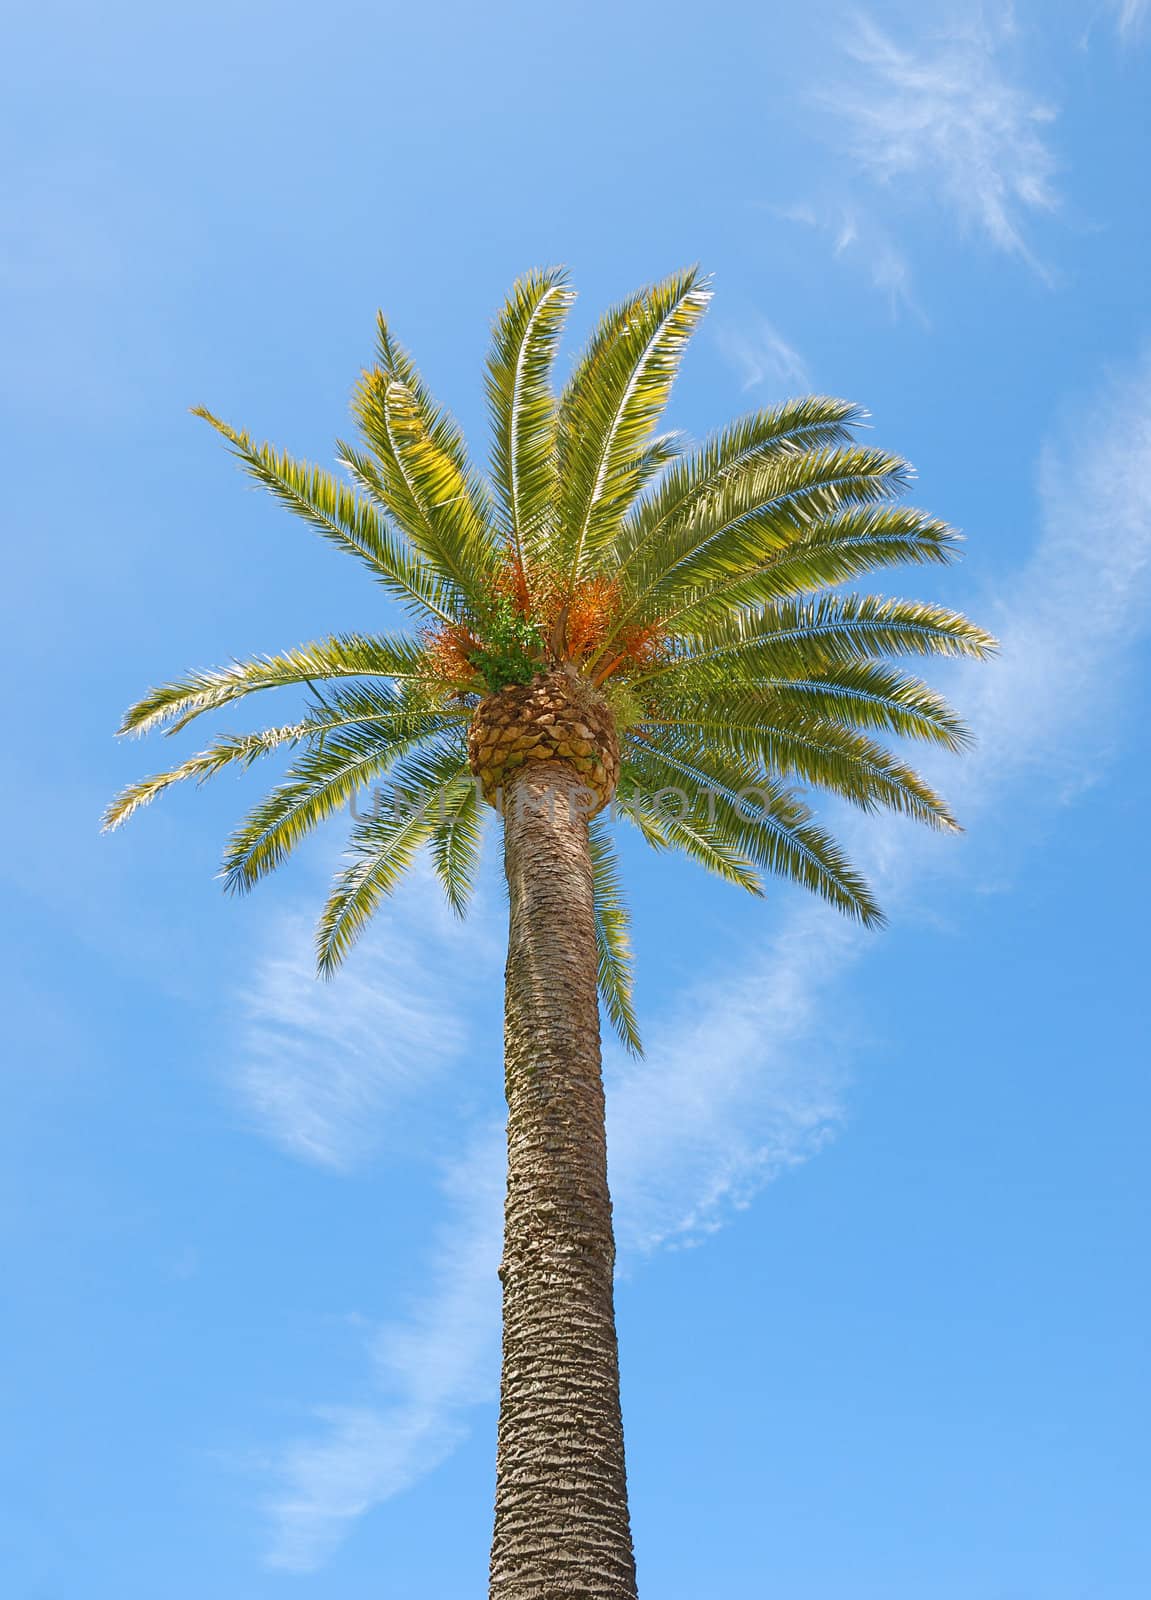 Sunlit Palm Tree by goldenangel